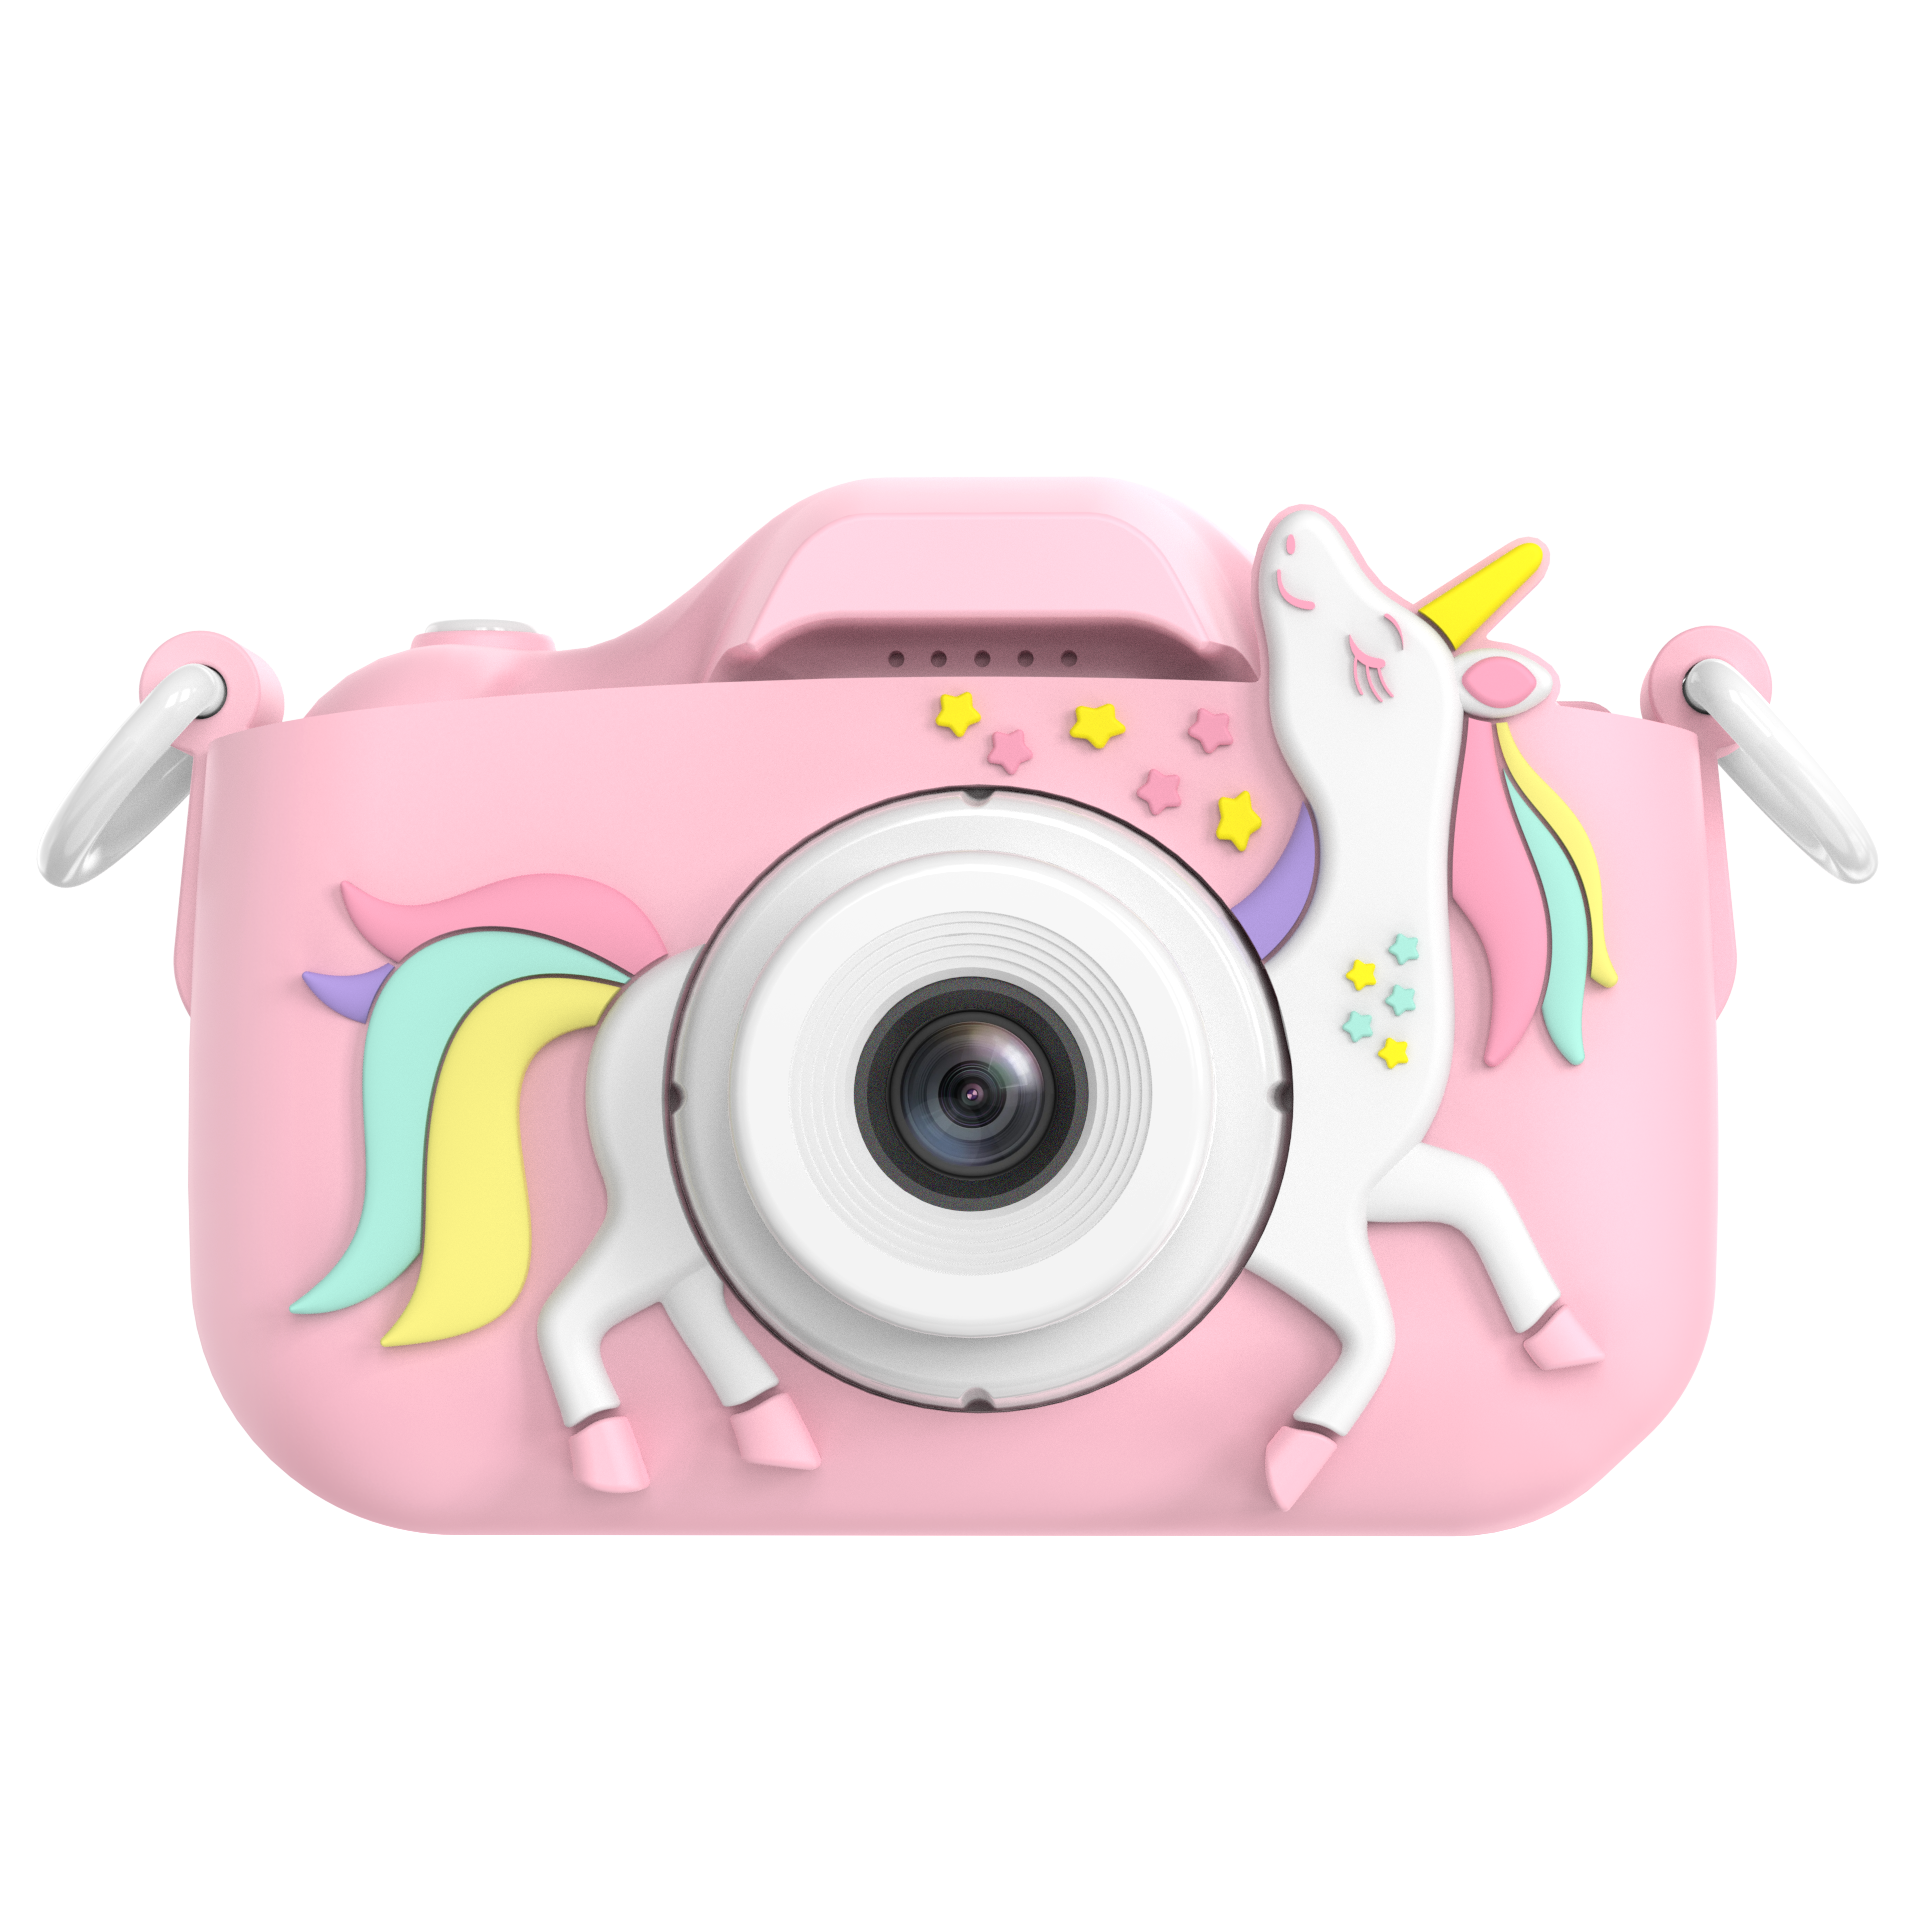 キッズカメラ 子供用カメラ トイカメラ デジタルカメラ カメラ おもちゃ 玩具